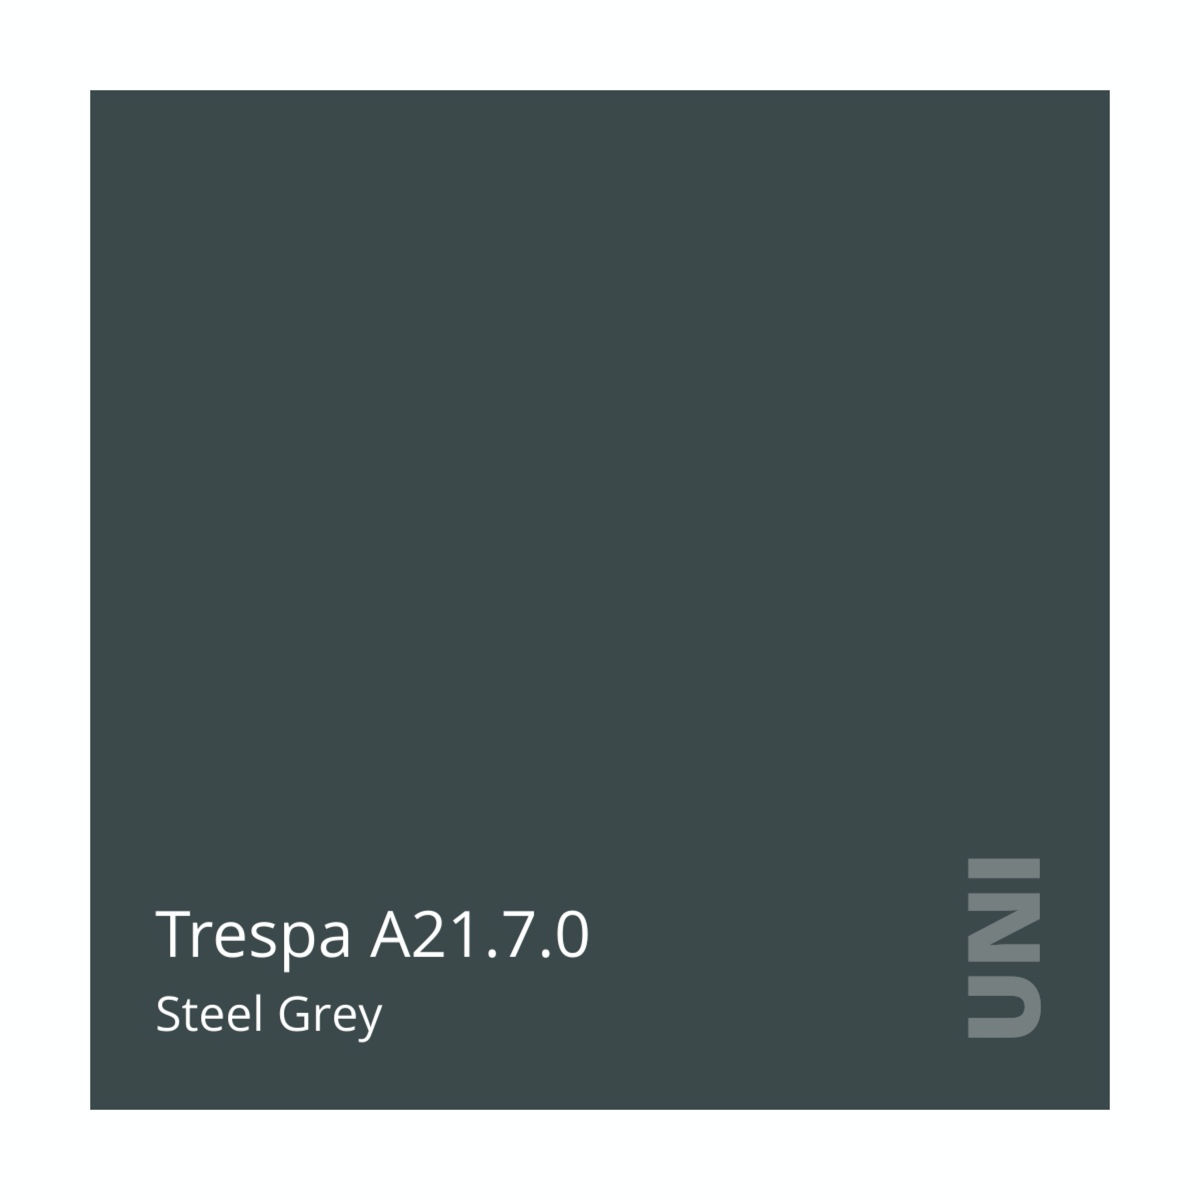 Trespa A21.7.0 Steel Grey